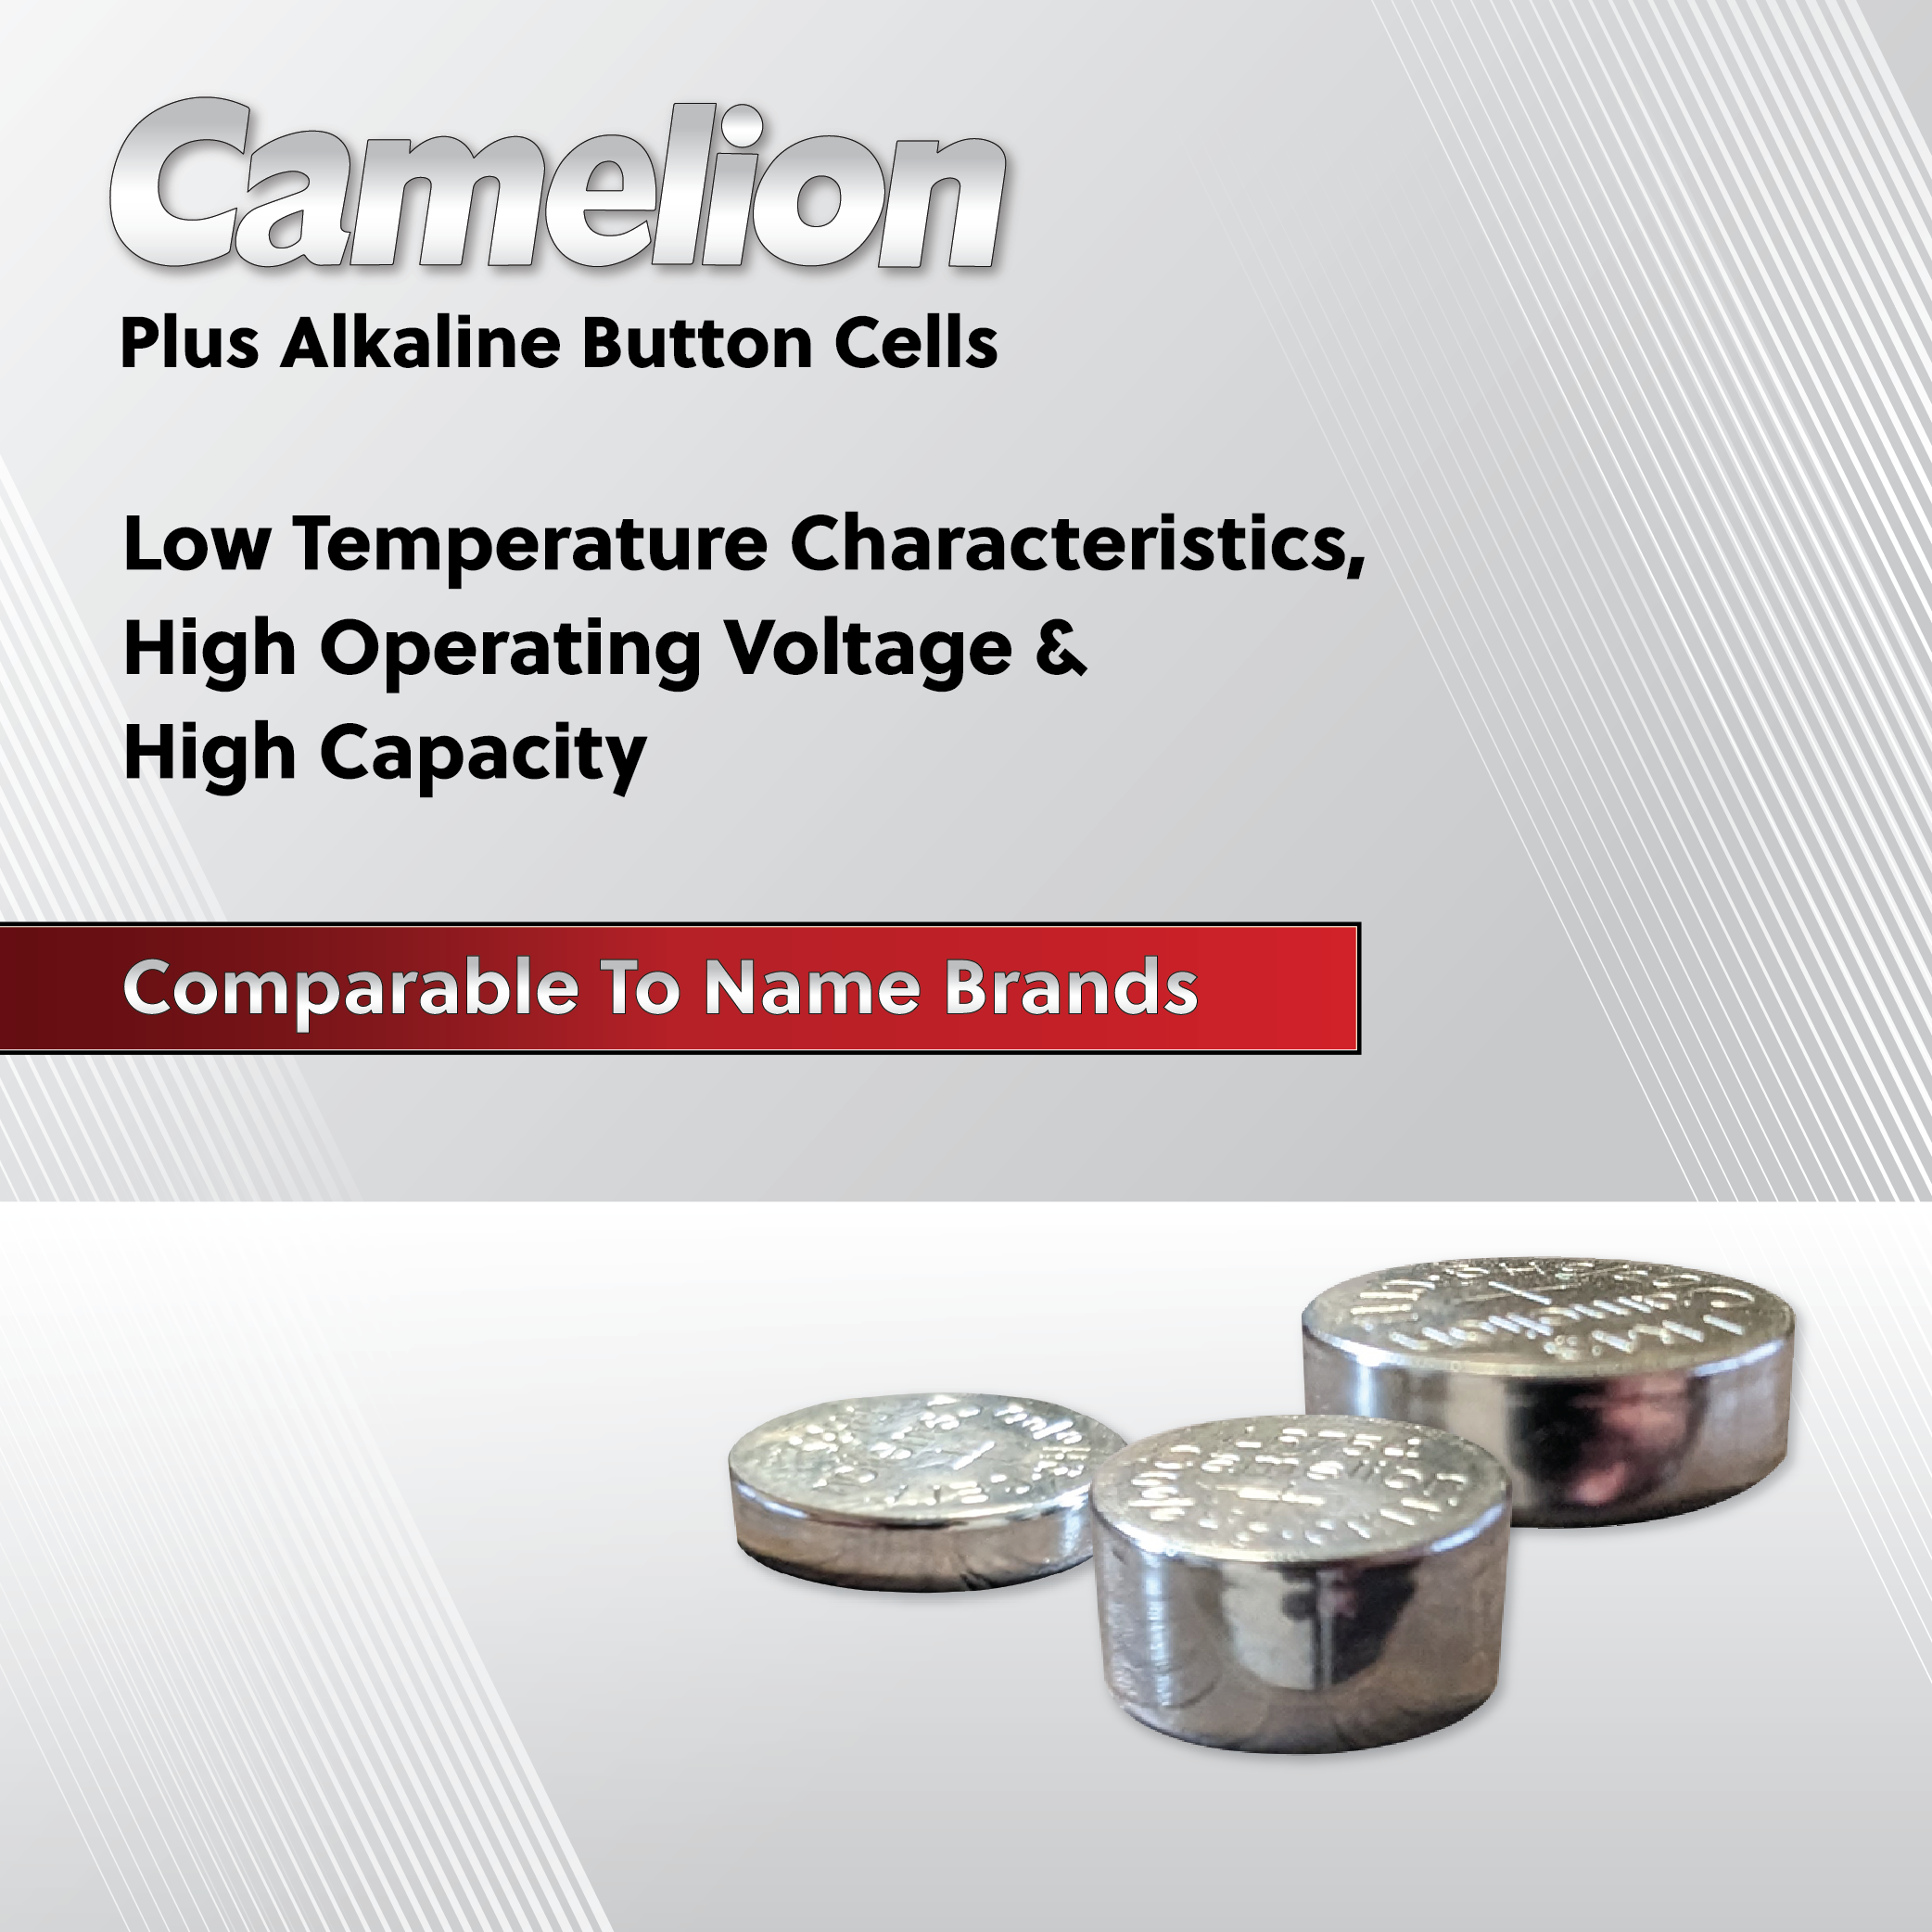 Camelion AG9 / G9 / LR936 / LR45 / 194 / SR936W / GP94A / 394 (dos opciones de embalaje)